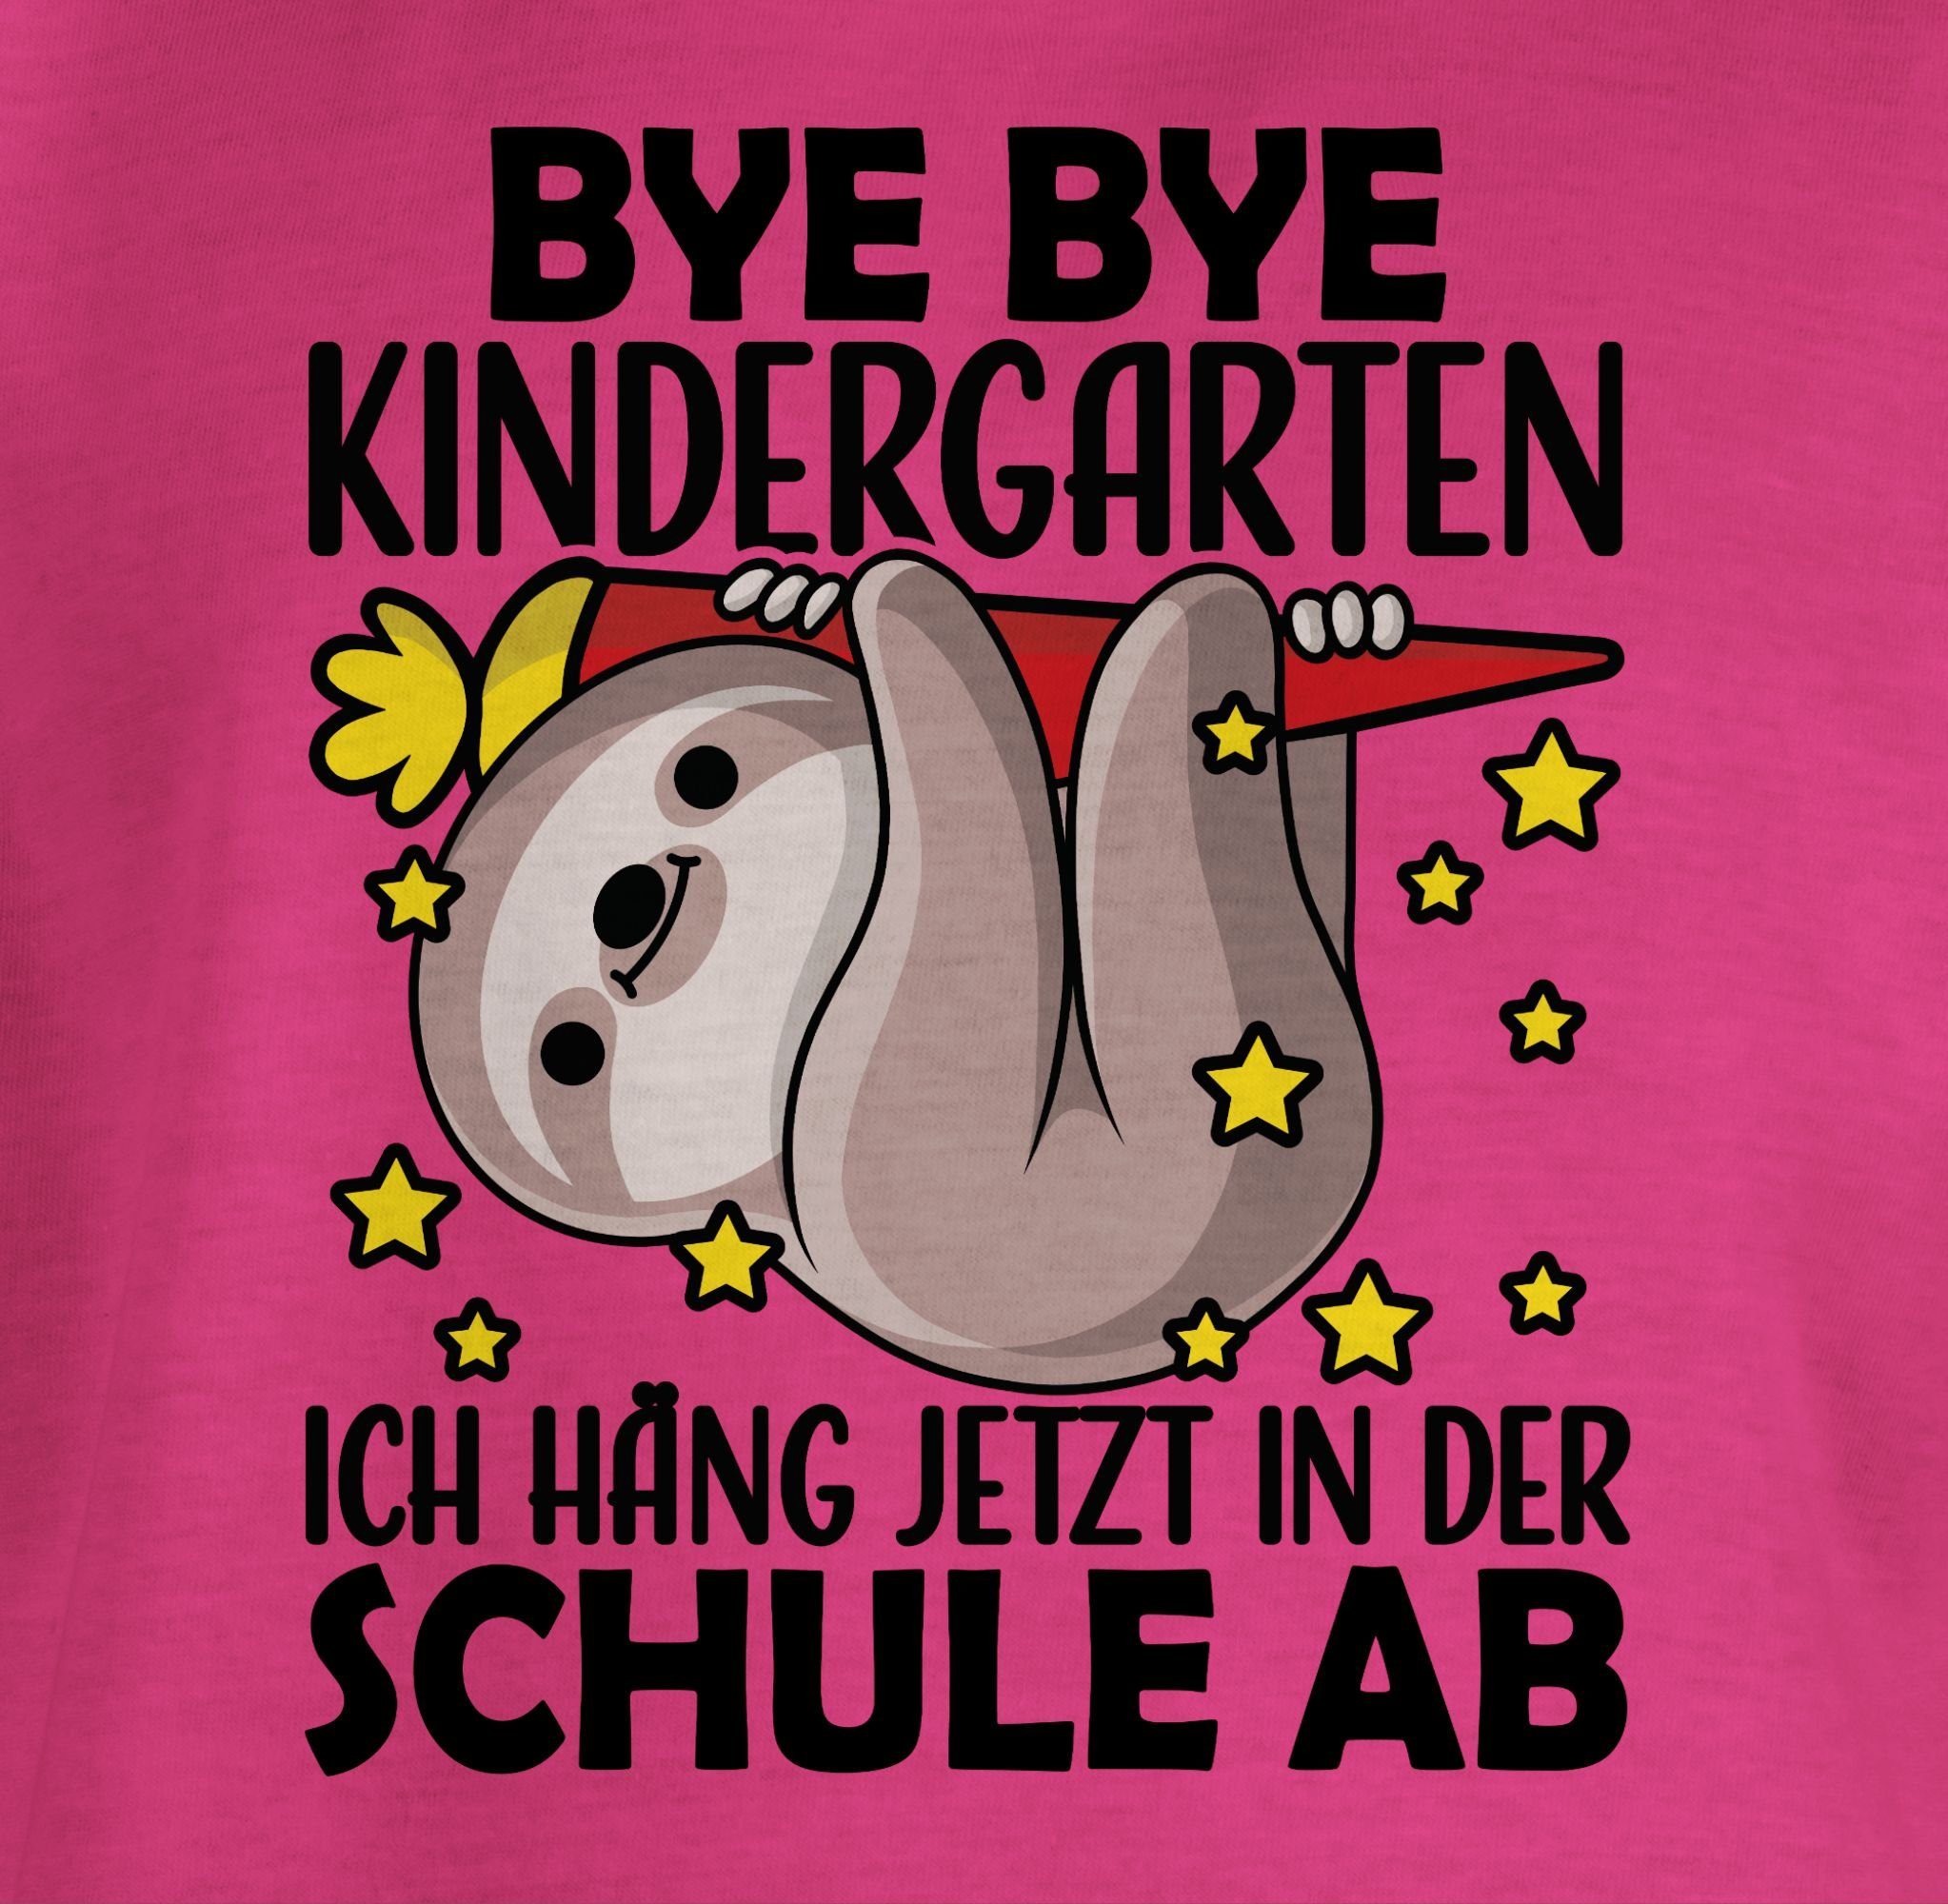 Shirtracer T-Shirt Bye der Fuchsia - Faultier Mädchen ab Schule s hänge Einschulung Bye mit 1 Kindergarten in jetzt ich